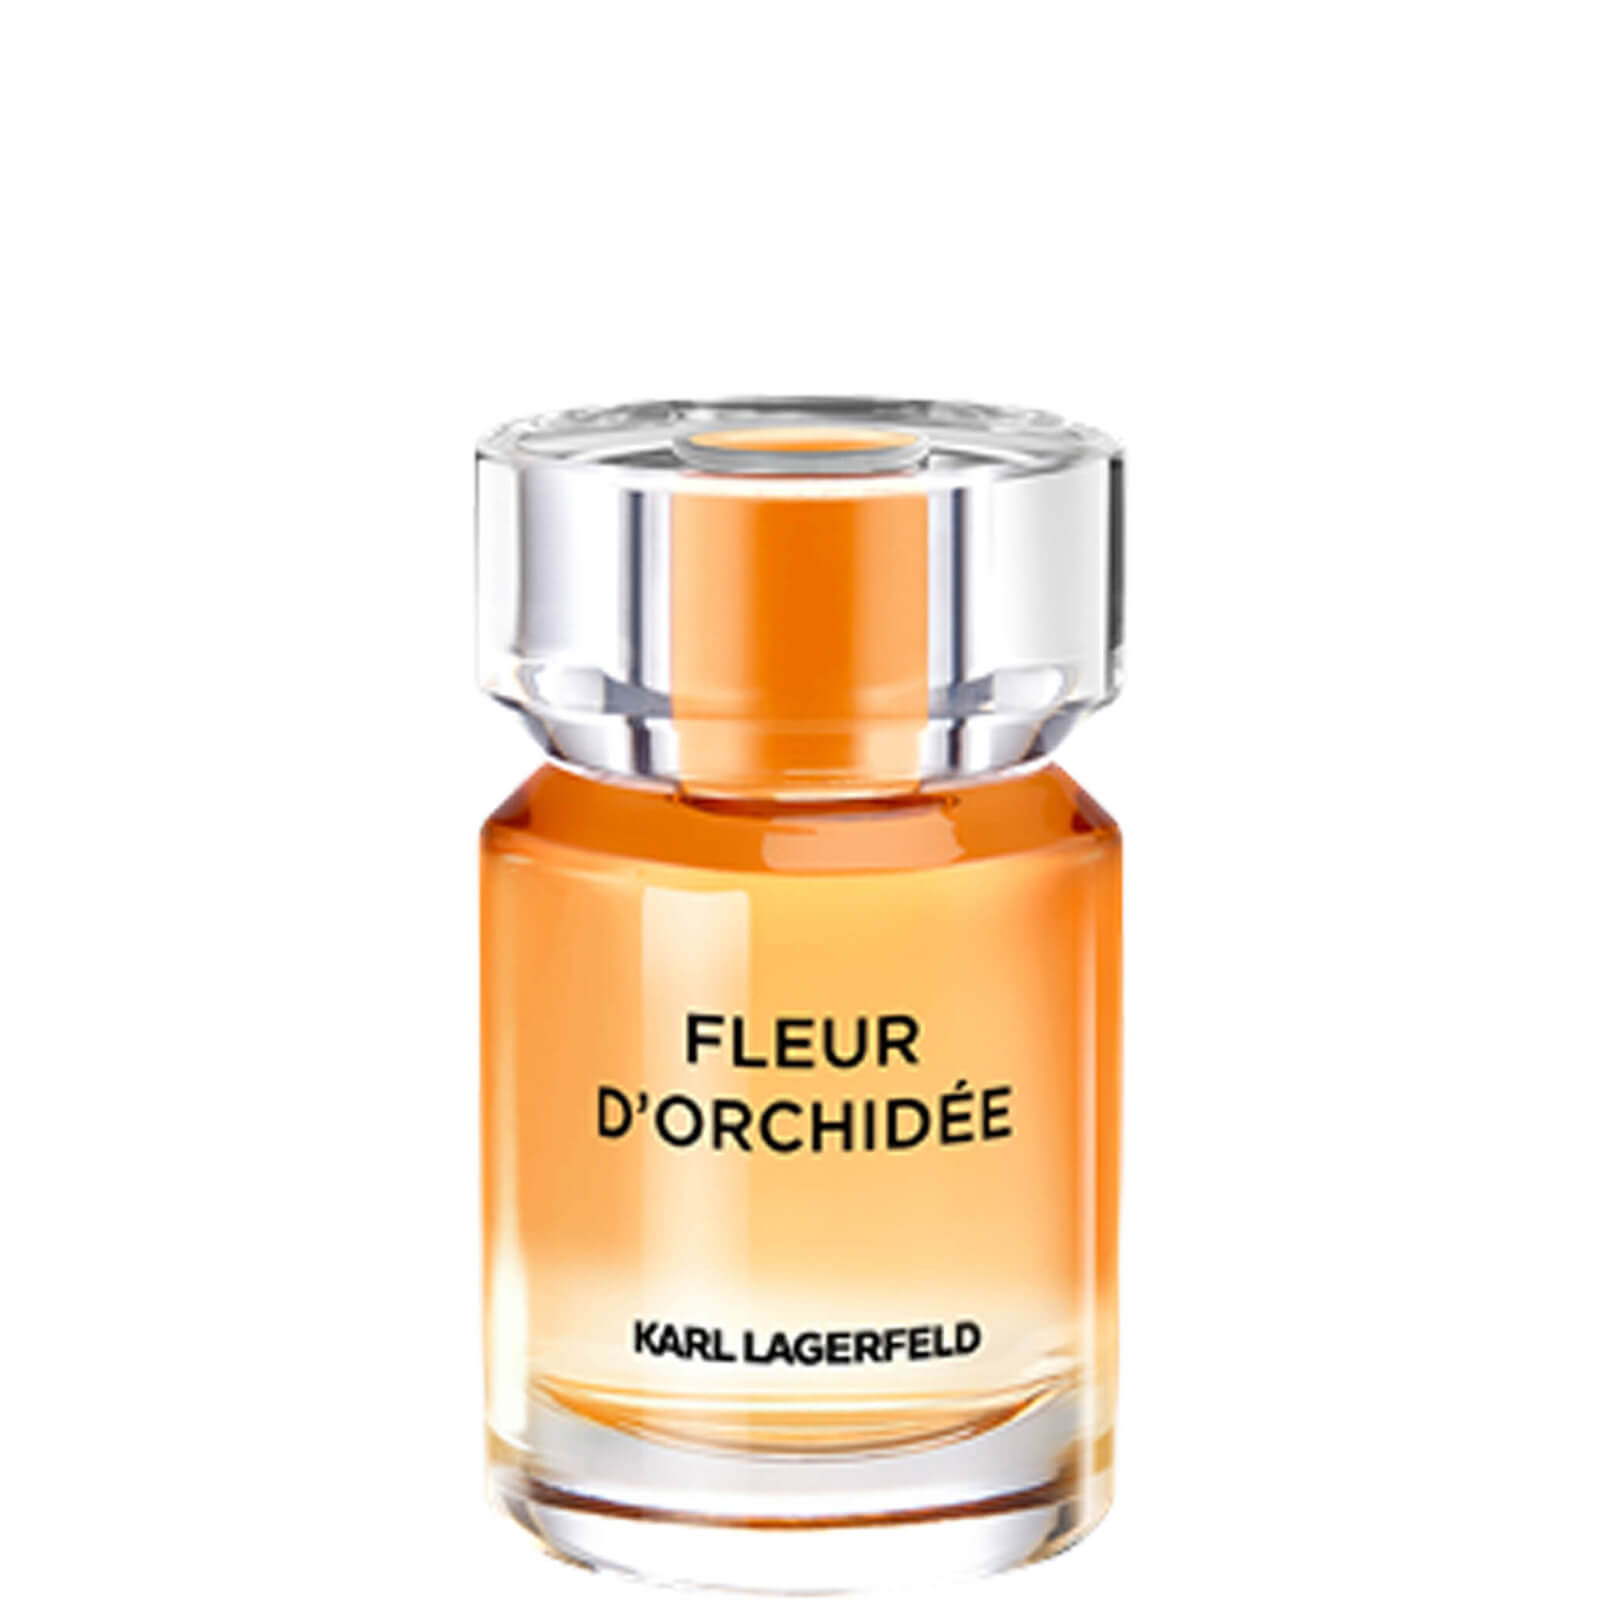 Photos - Women's Fragrance Karl Lagerfeld Fleur d’Orchidée Eau de Parfum 50ml KL008A55 